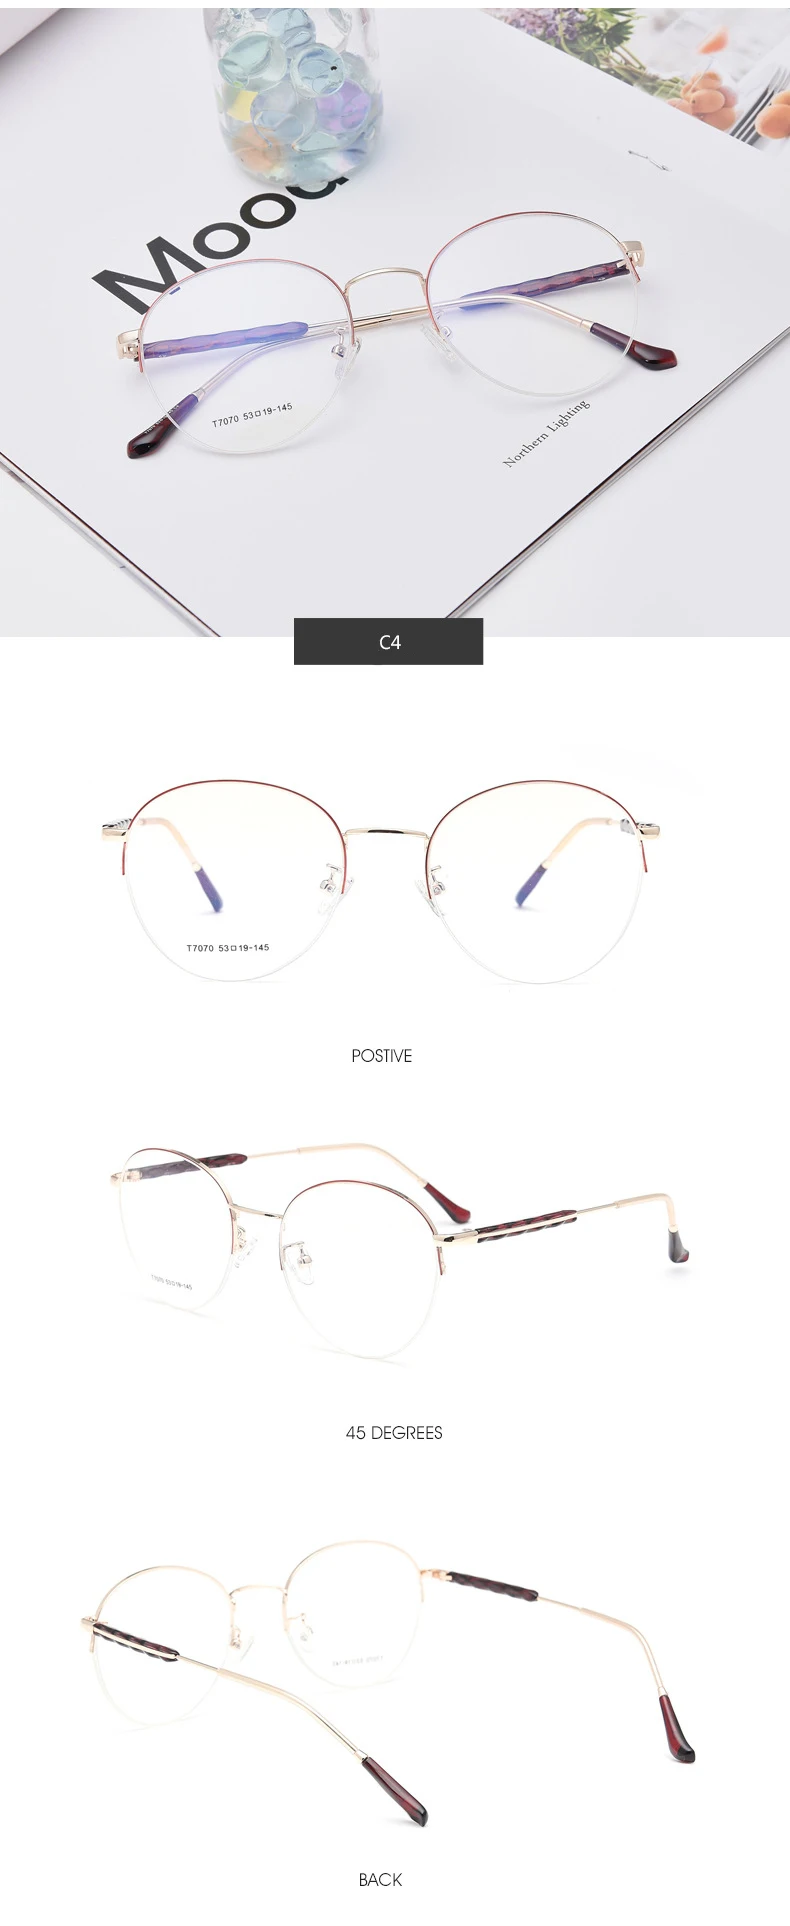 Корейские ультралегкие круглые очки оправа женские голубые легкие очки для компьютера Ретро прозрачные очки для чтения защита PG0060